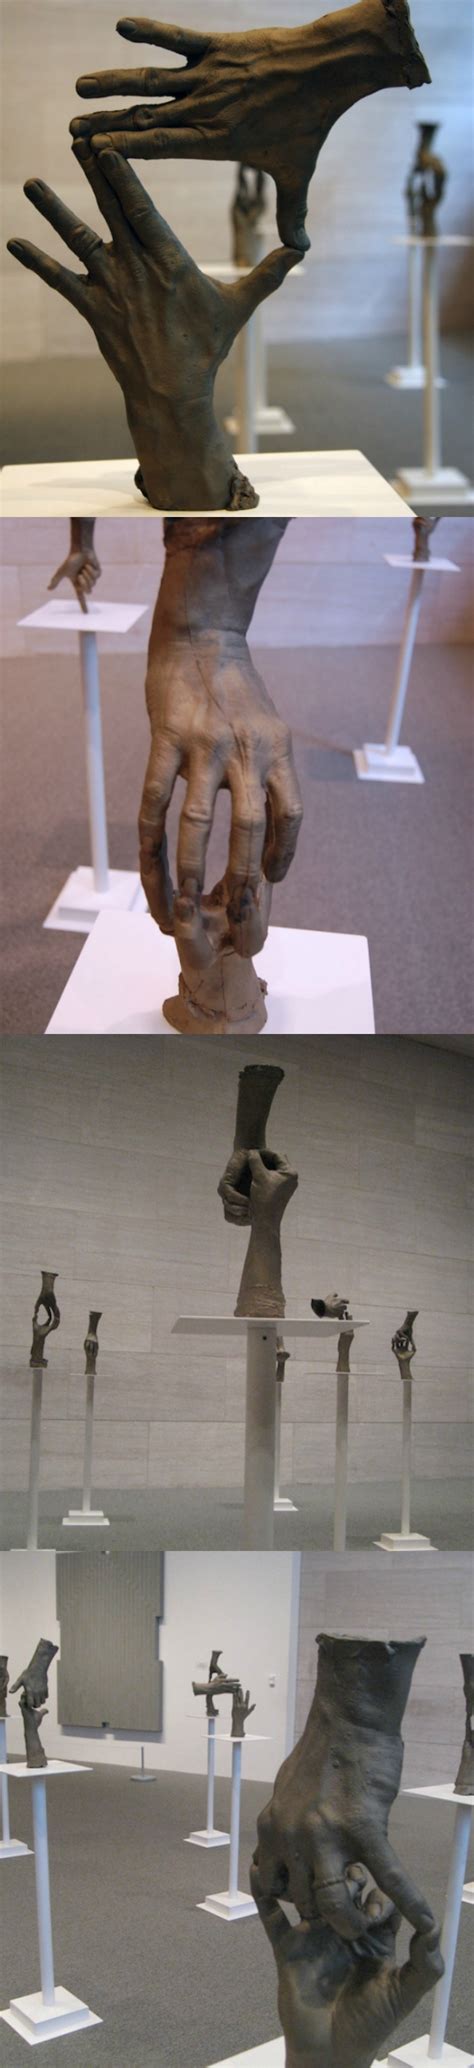 Bronze Hand Sculptures By Bruce Nauman Hand Sculpture Sculptures